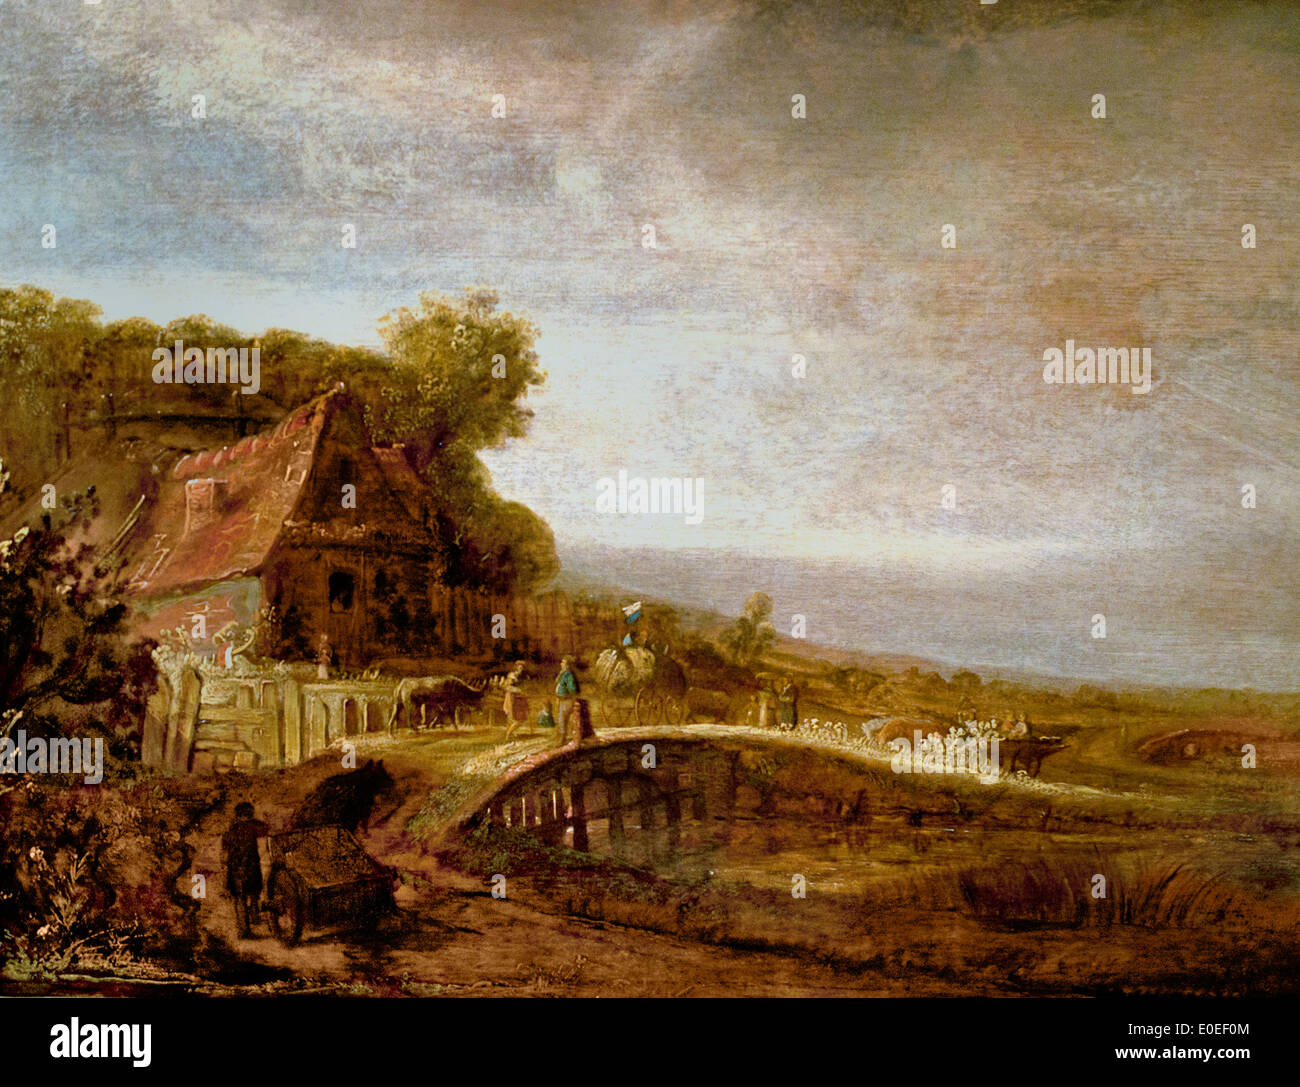 Paysage avec une ferme et un pont 1640 Govert Flinck 1615-1660 Pays-Bas Néerlandais Allemand Banque D'Images